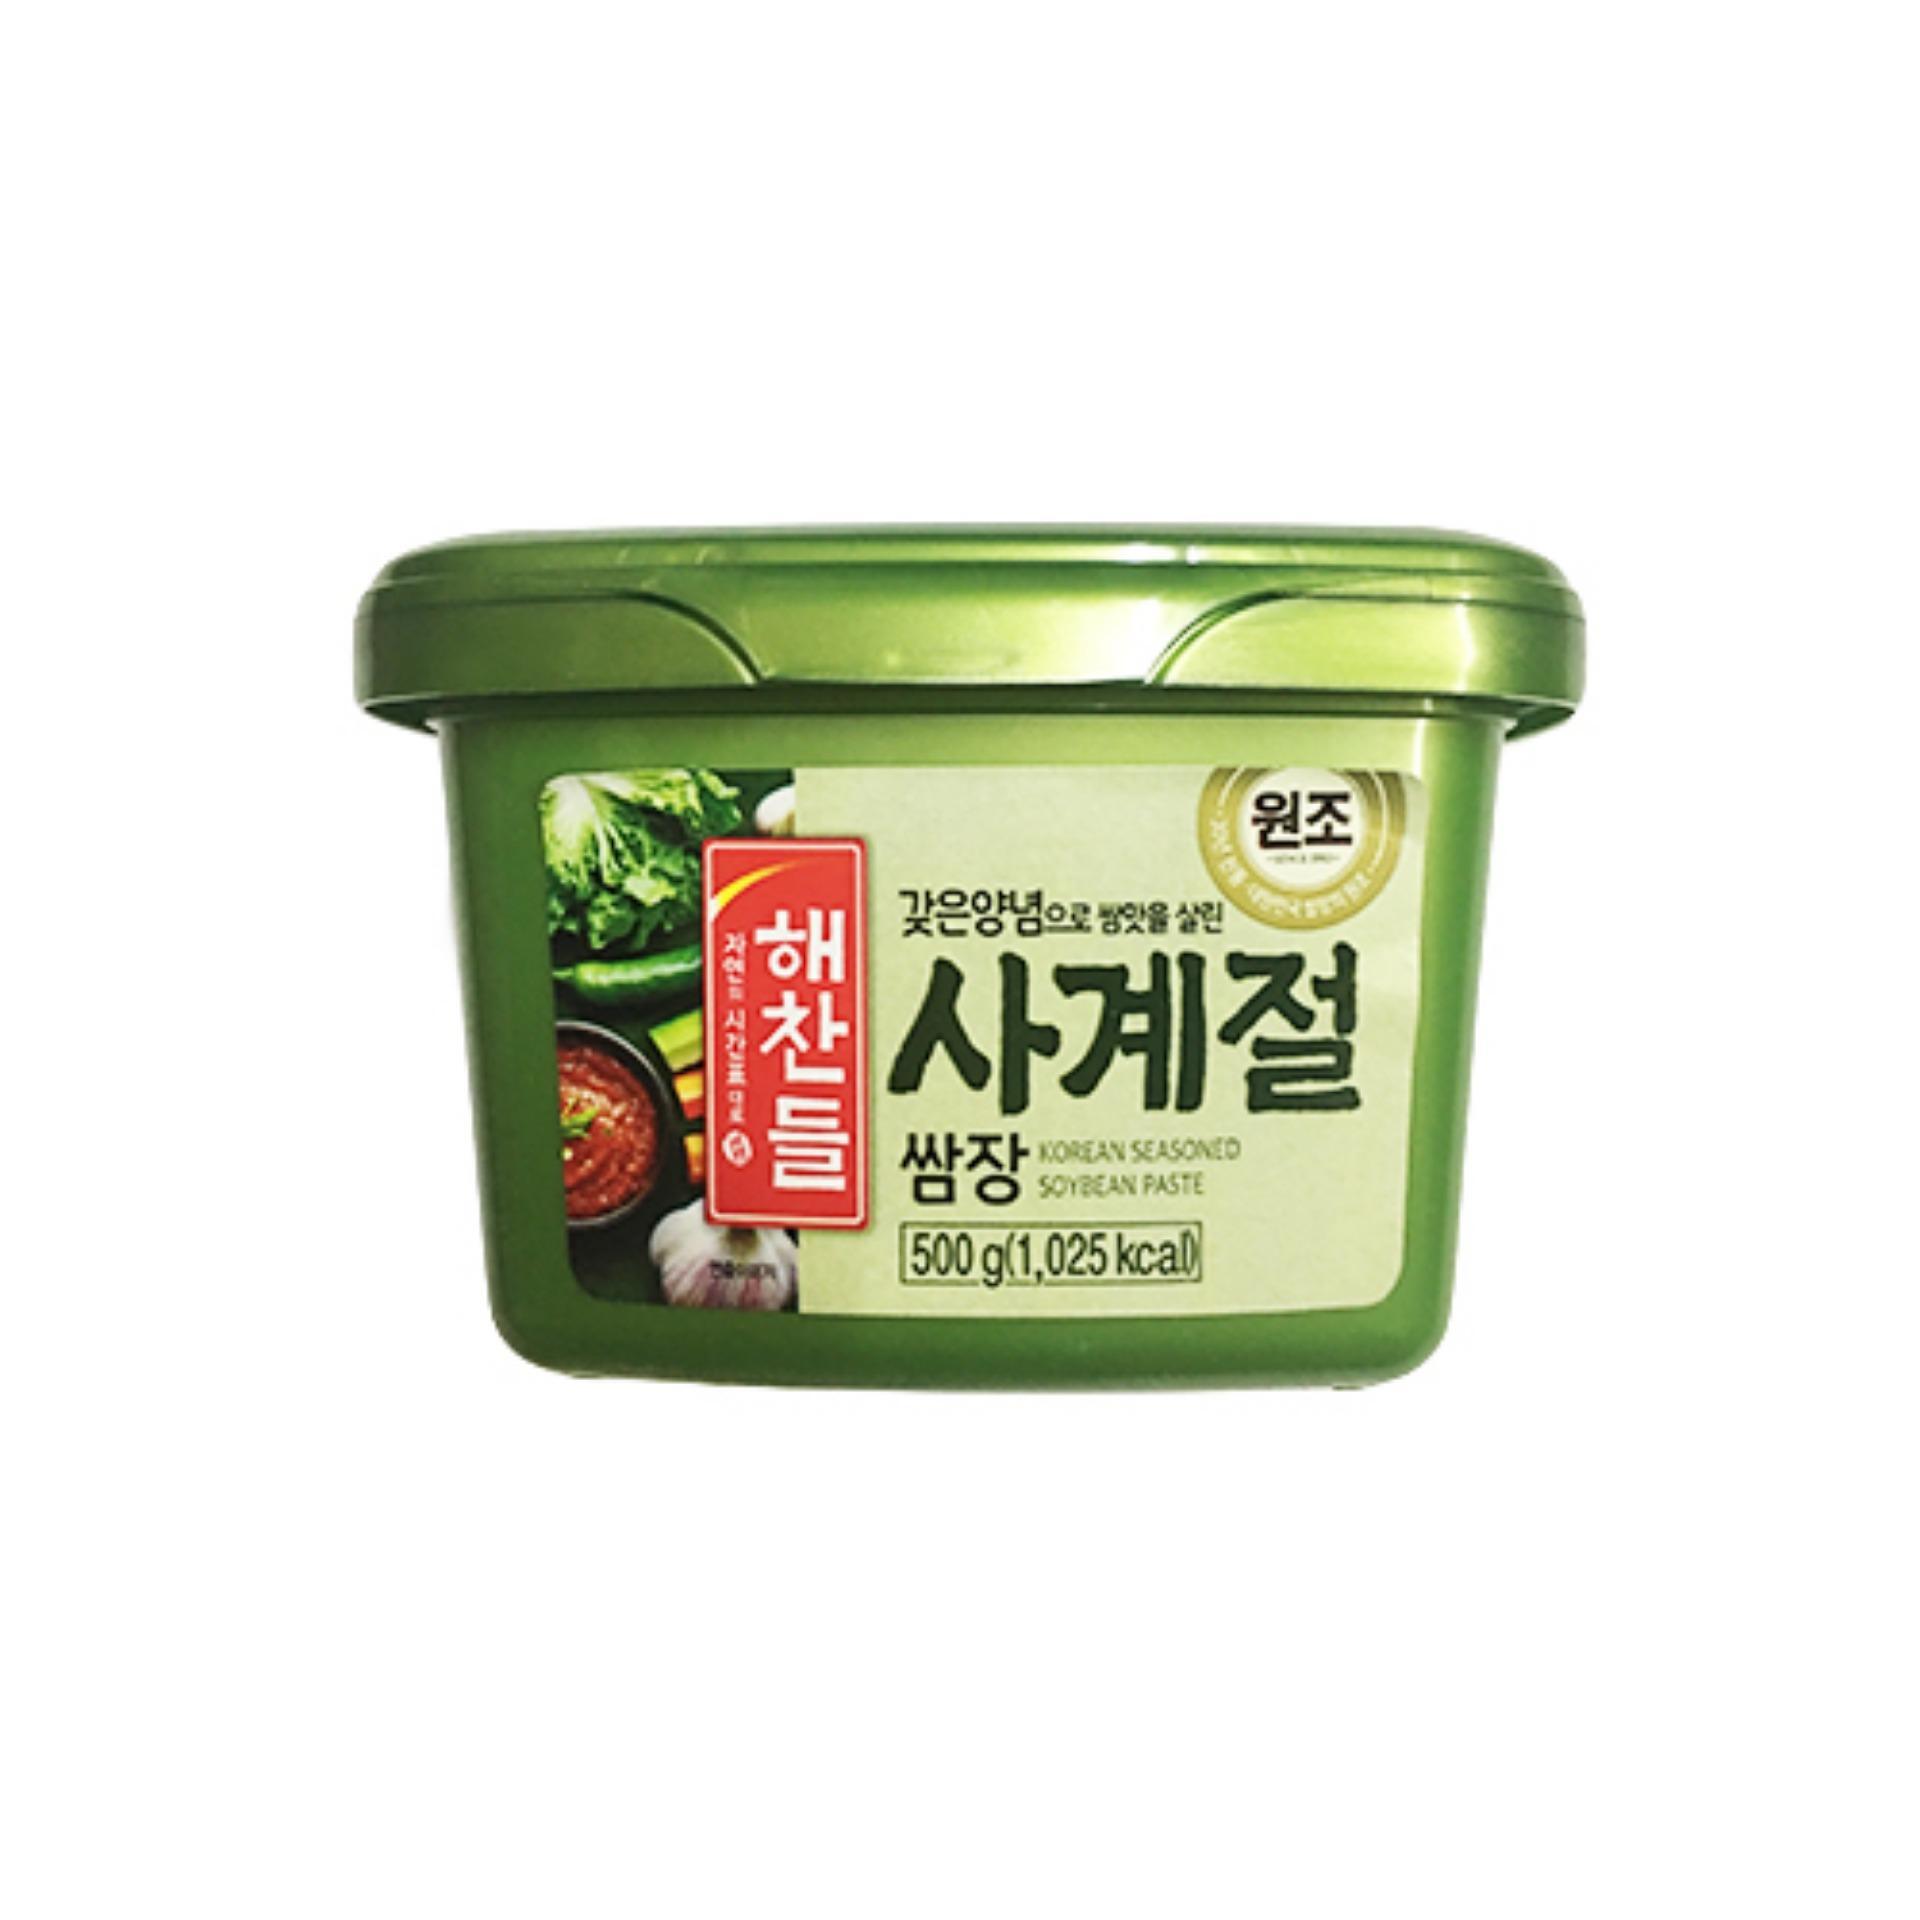 Tương trộn Hàn Quốc ăn liền Haechandle hộp 500g